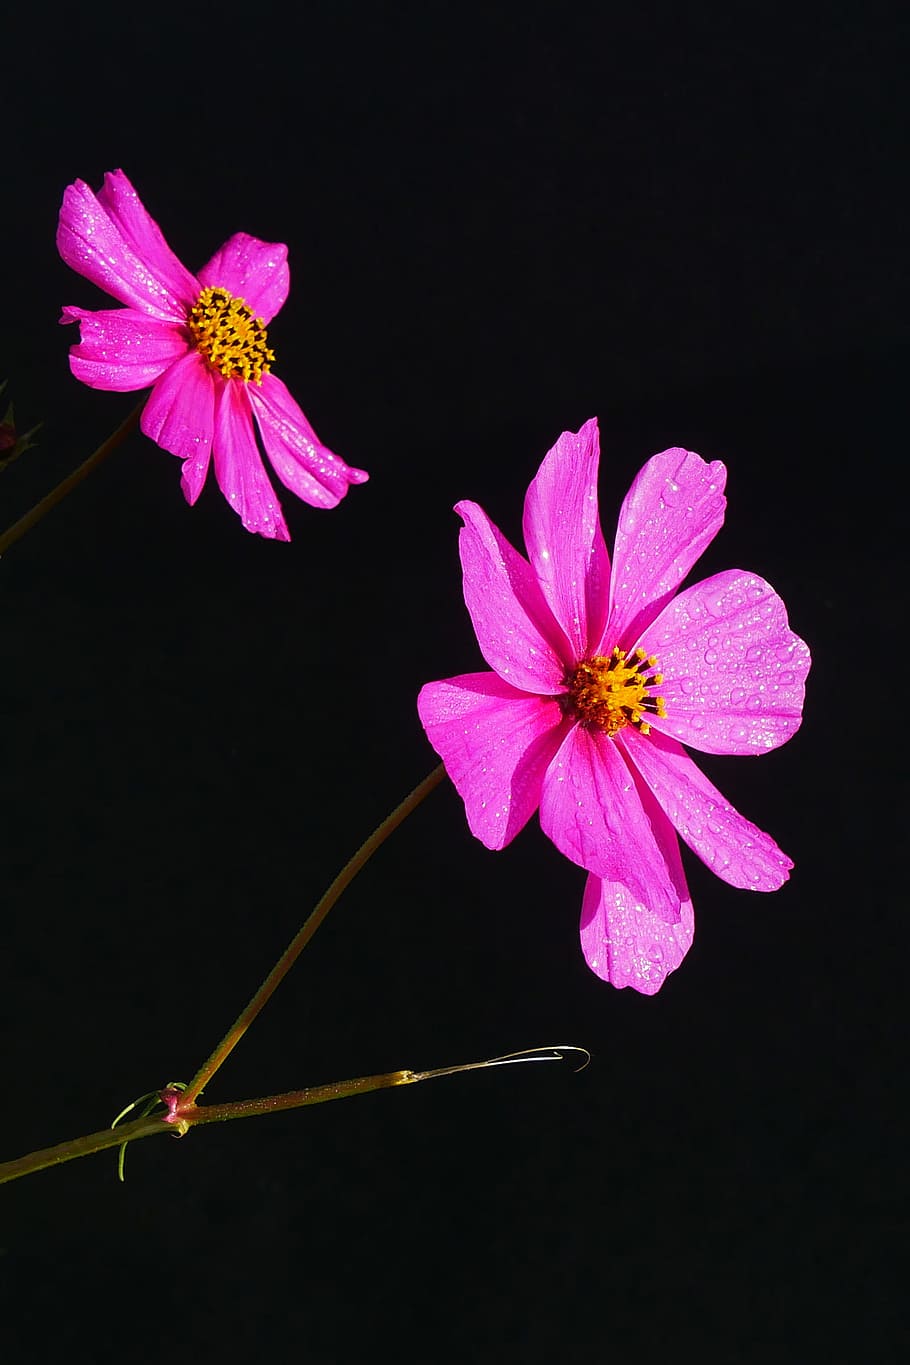 merah muda, bunga kosmos, closeup., tanaman kosmos, bunga merah muda, gambar bunga, foto bunga, gambar bunga indah, tanaman berbunga, bunga